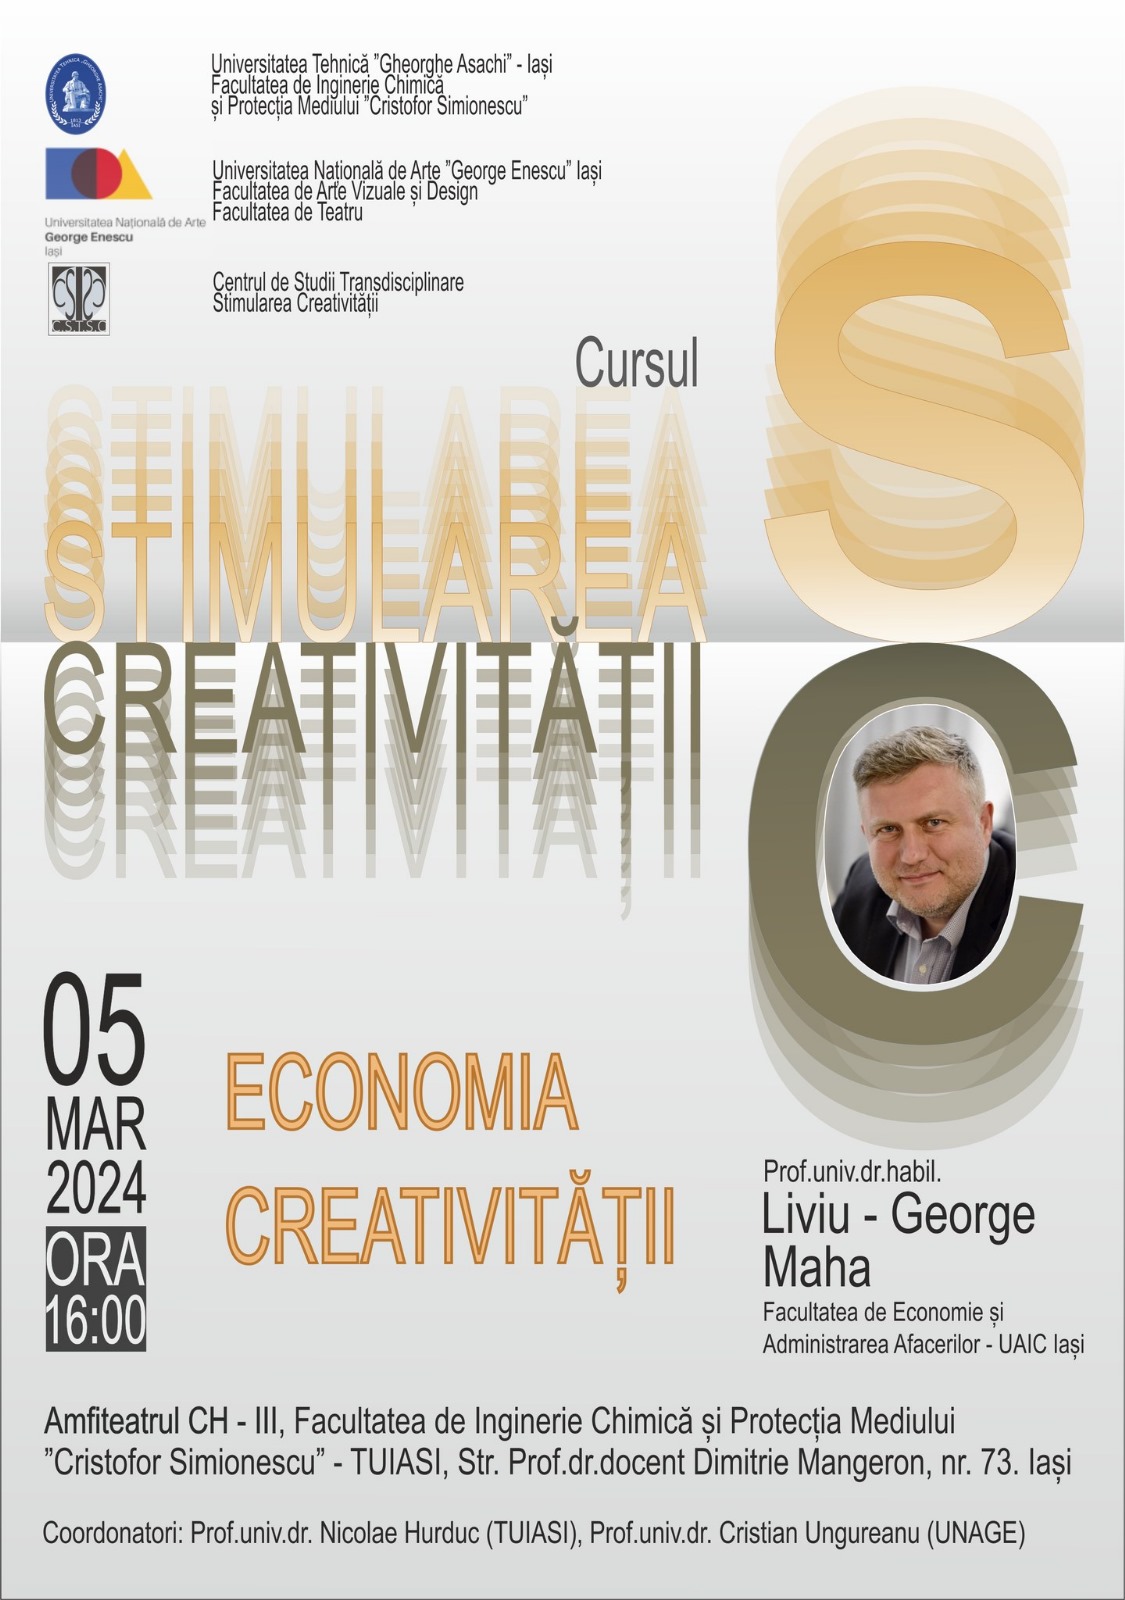 Curs: Economia Creativității de Prof.univ.dr.habil. Liviu – George Maha 05 MAR 2024 ORA 16:00